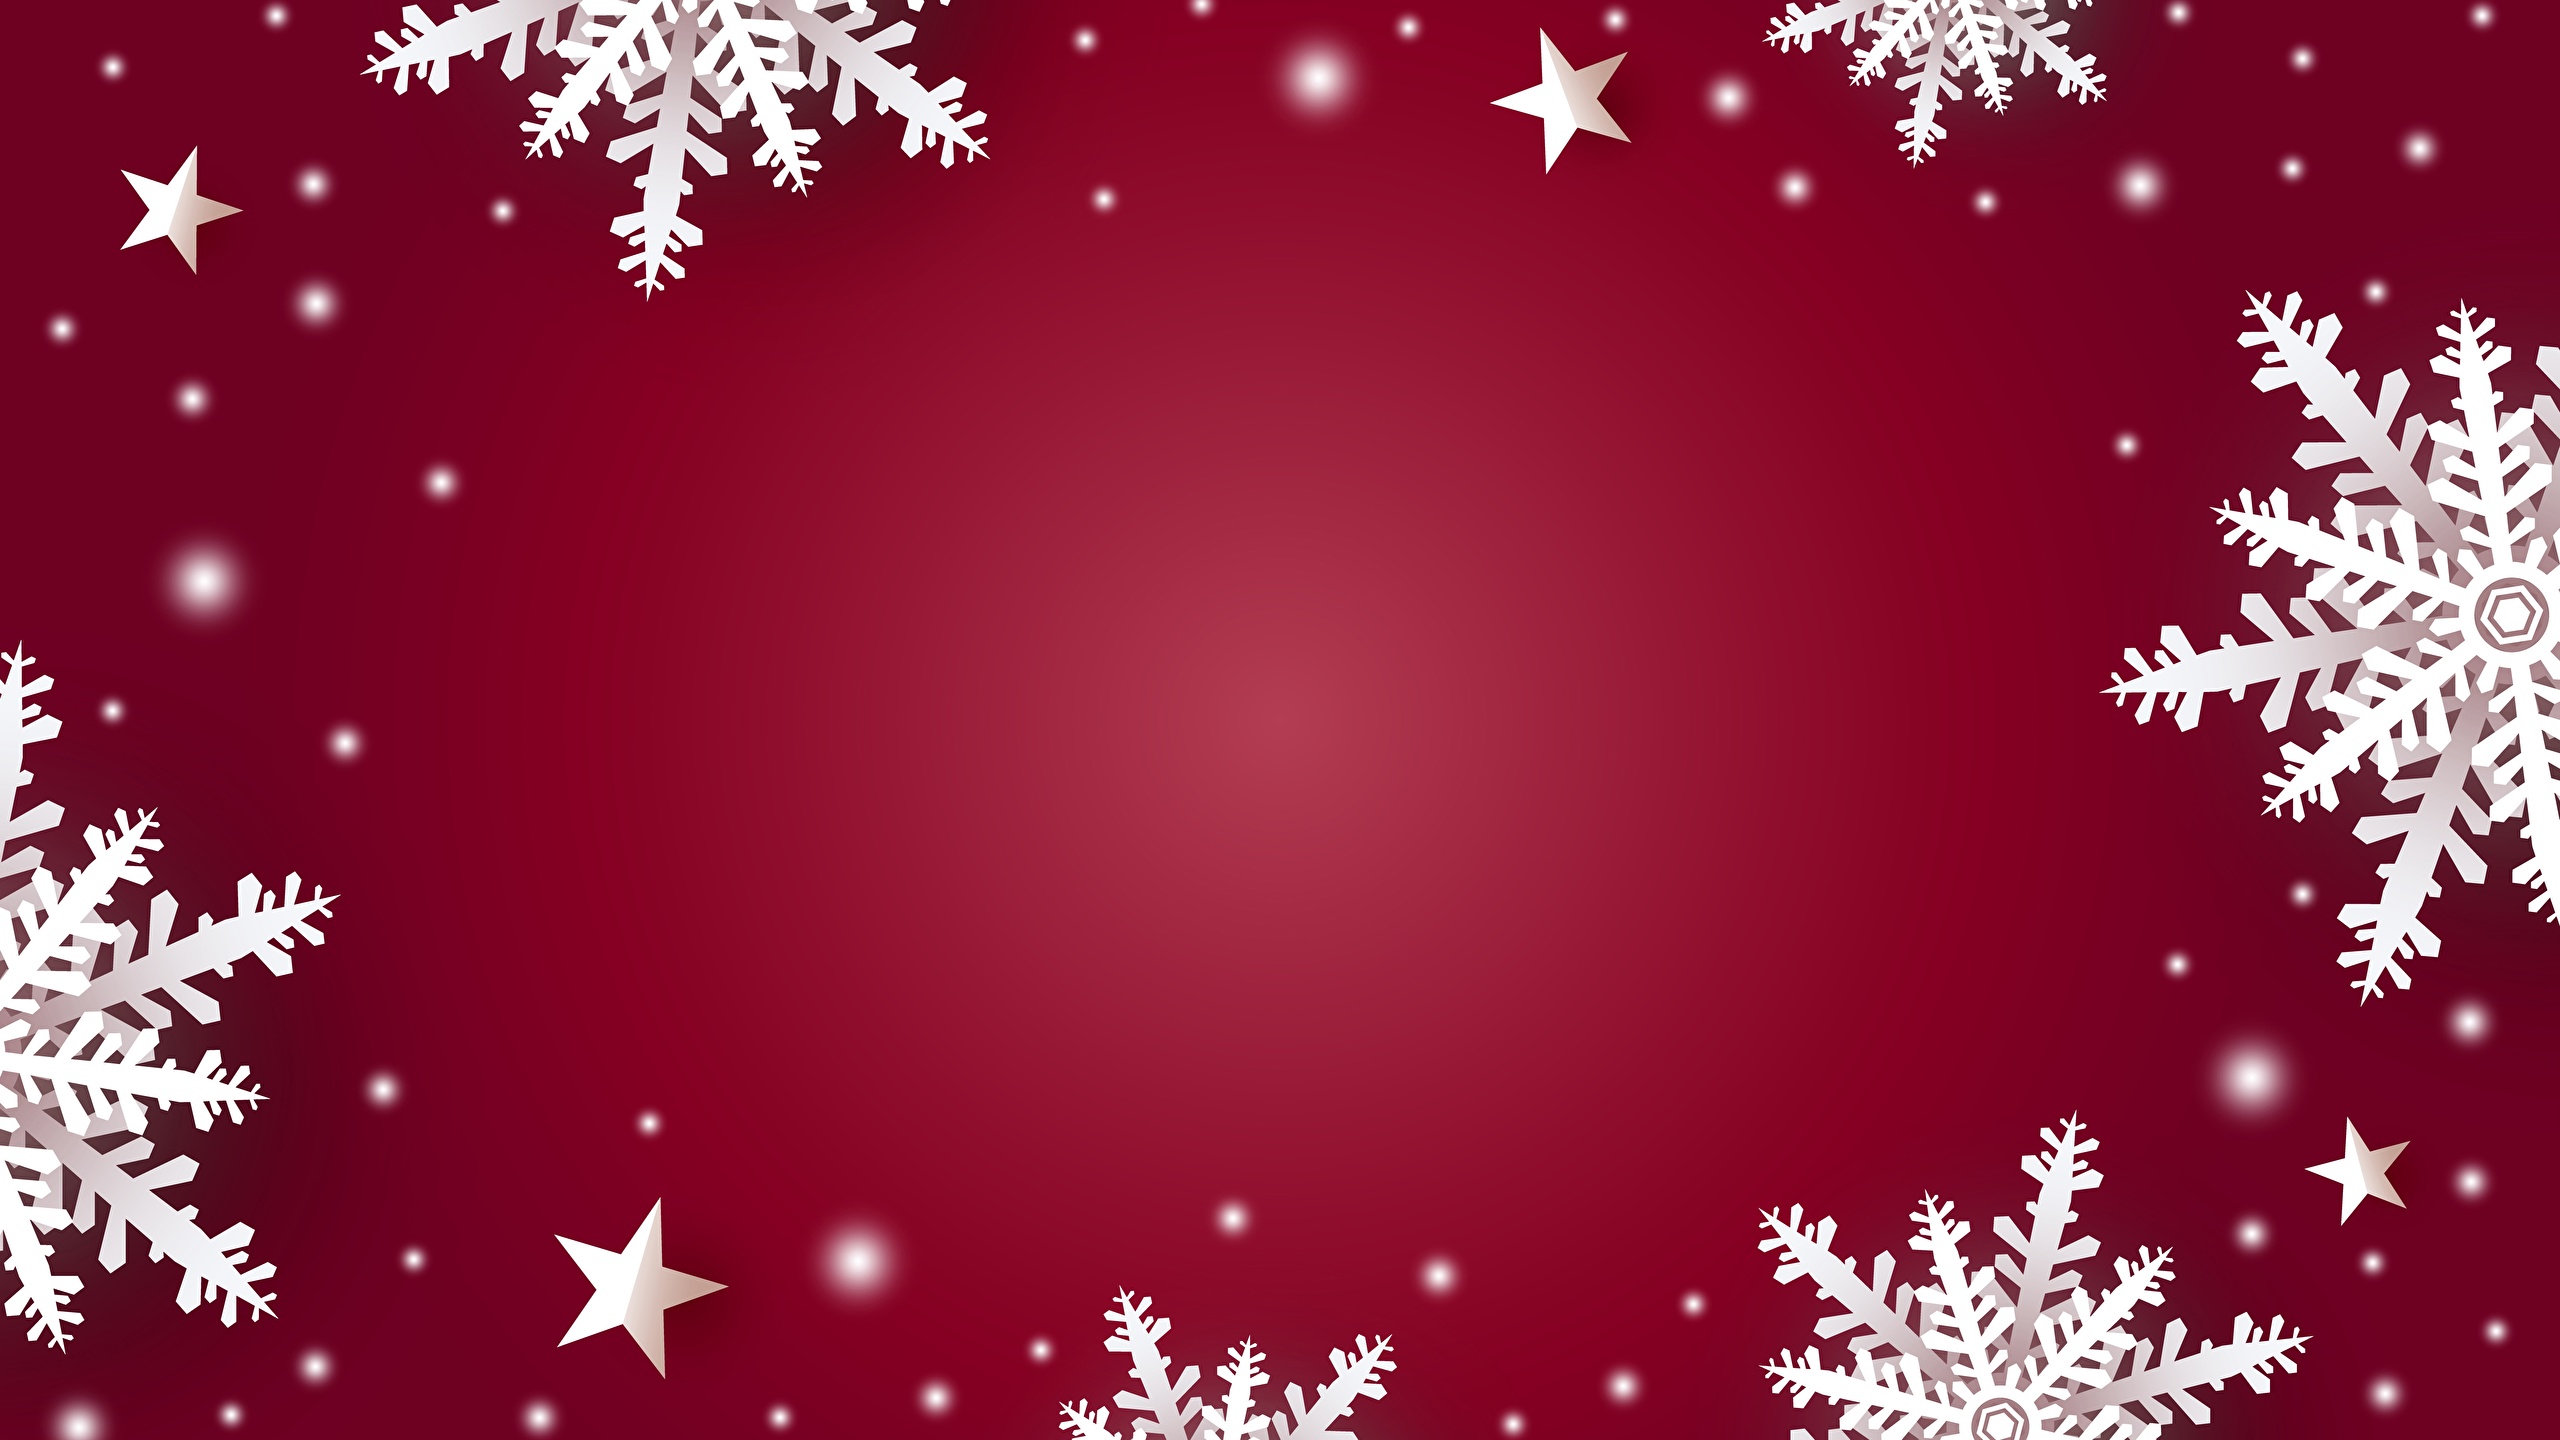 Фотография Новый год Снежинки Шаблон поздравительной открытки 2560x1440 Рождество снежинка